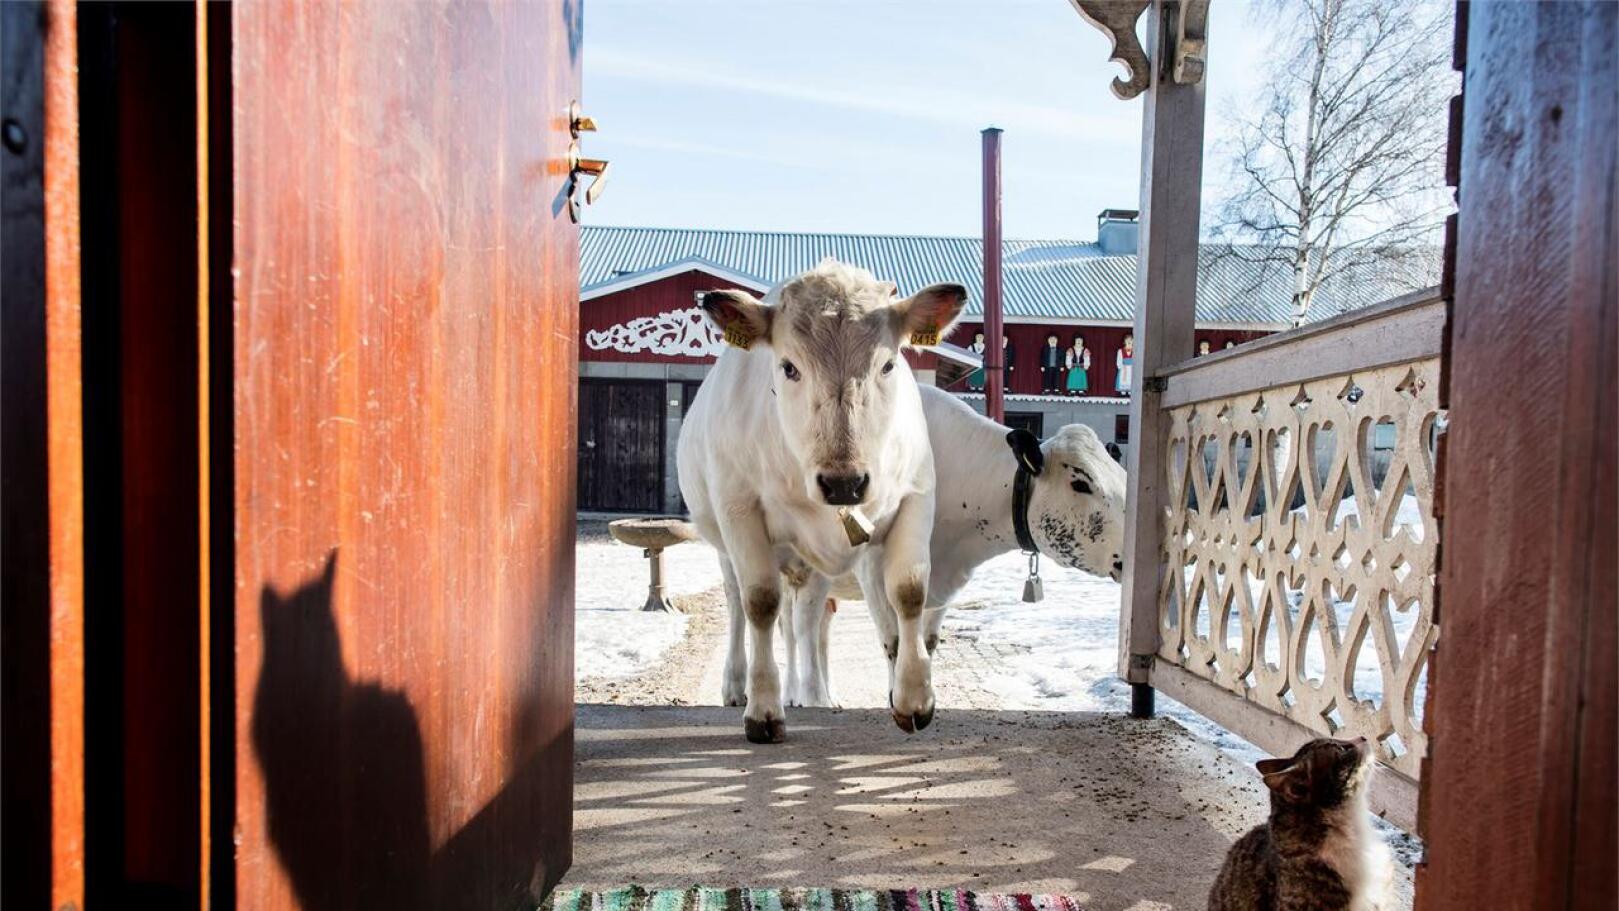 Onna-lehmä ja Niila-härkä viihtyvät porraspäässä, mutta sisälle uskaltautuu vain rohkeampi ja uteliaampi Onna. Kuva: Jukka Lehojärvi